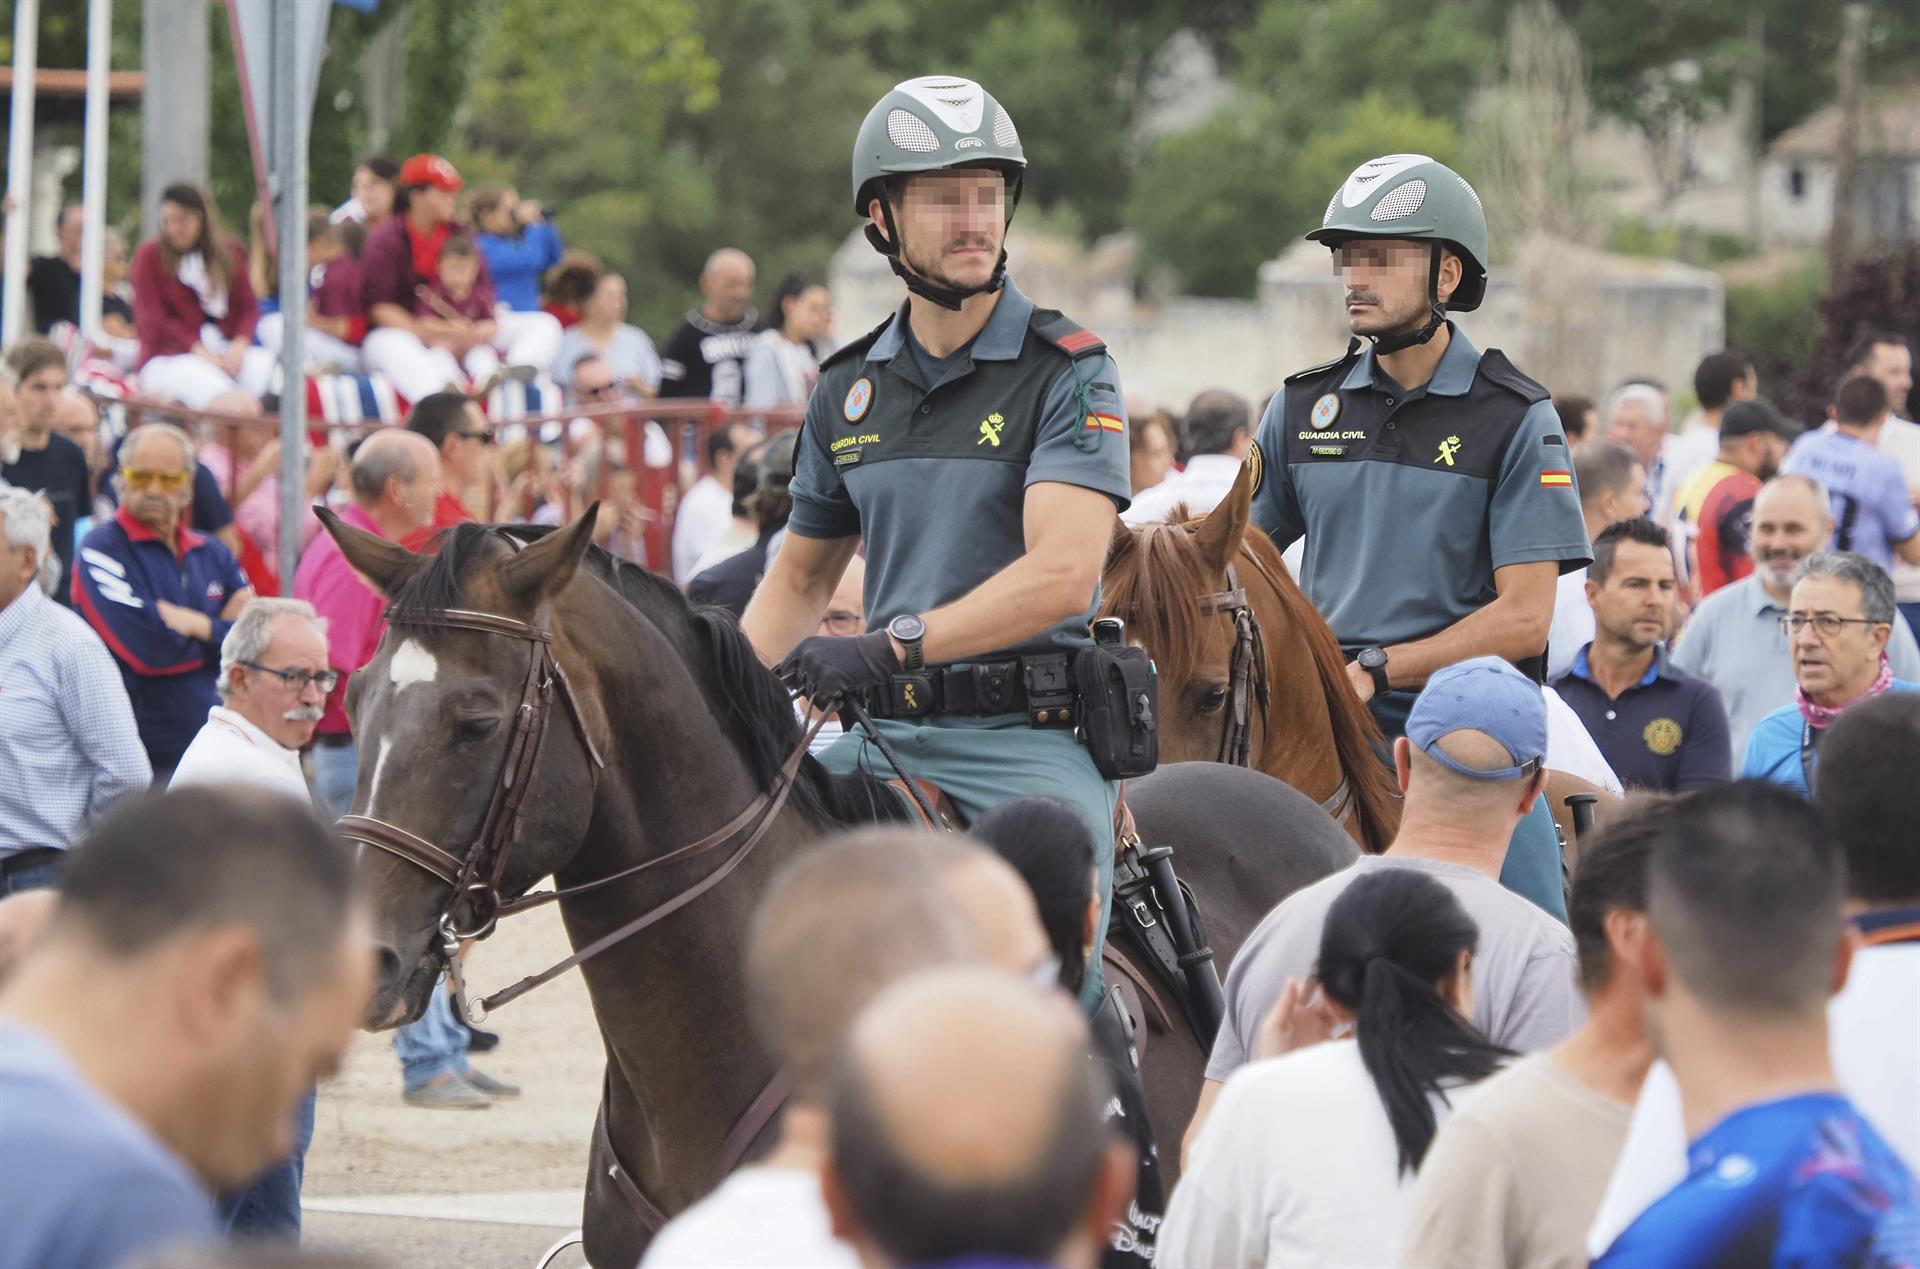 Dos guardias civiles a caballo velan por el orden público durante la celebración del festejo del Toro de la Vega en Tordesillas (Valadolid), este martes. EFE/ R. García
